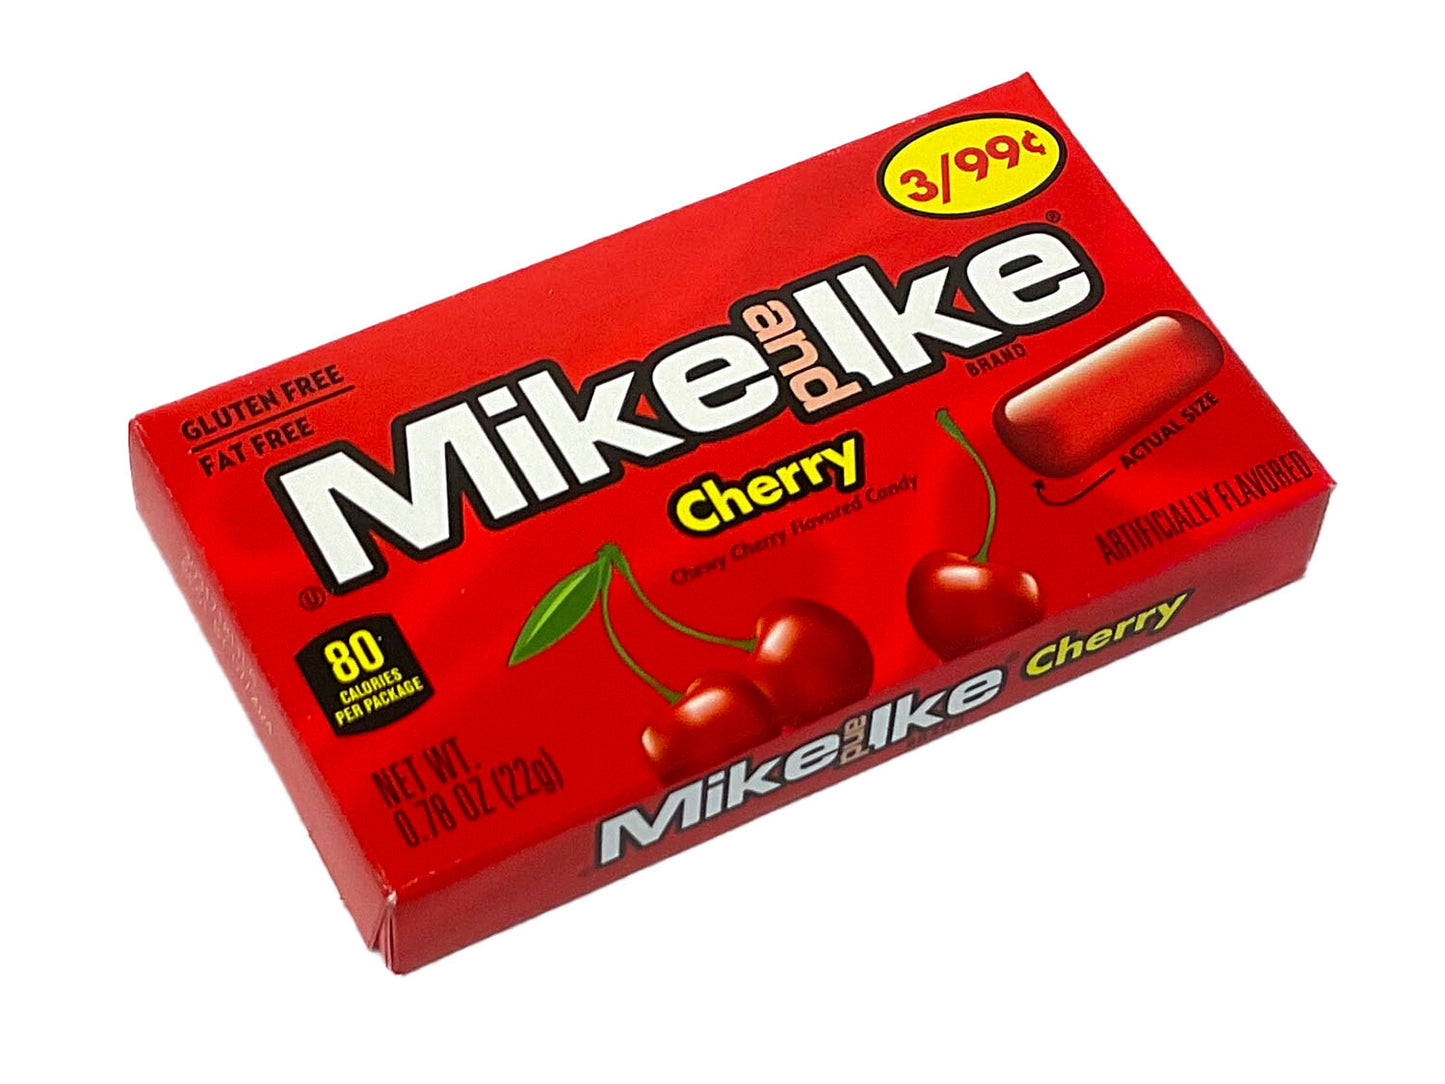 Mike & Ike Cherry - 0.78 oz mini box